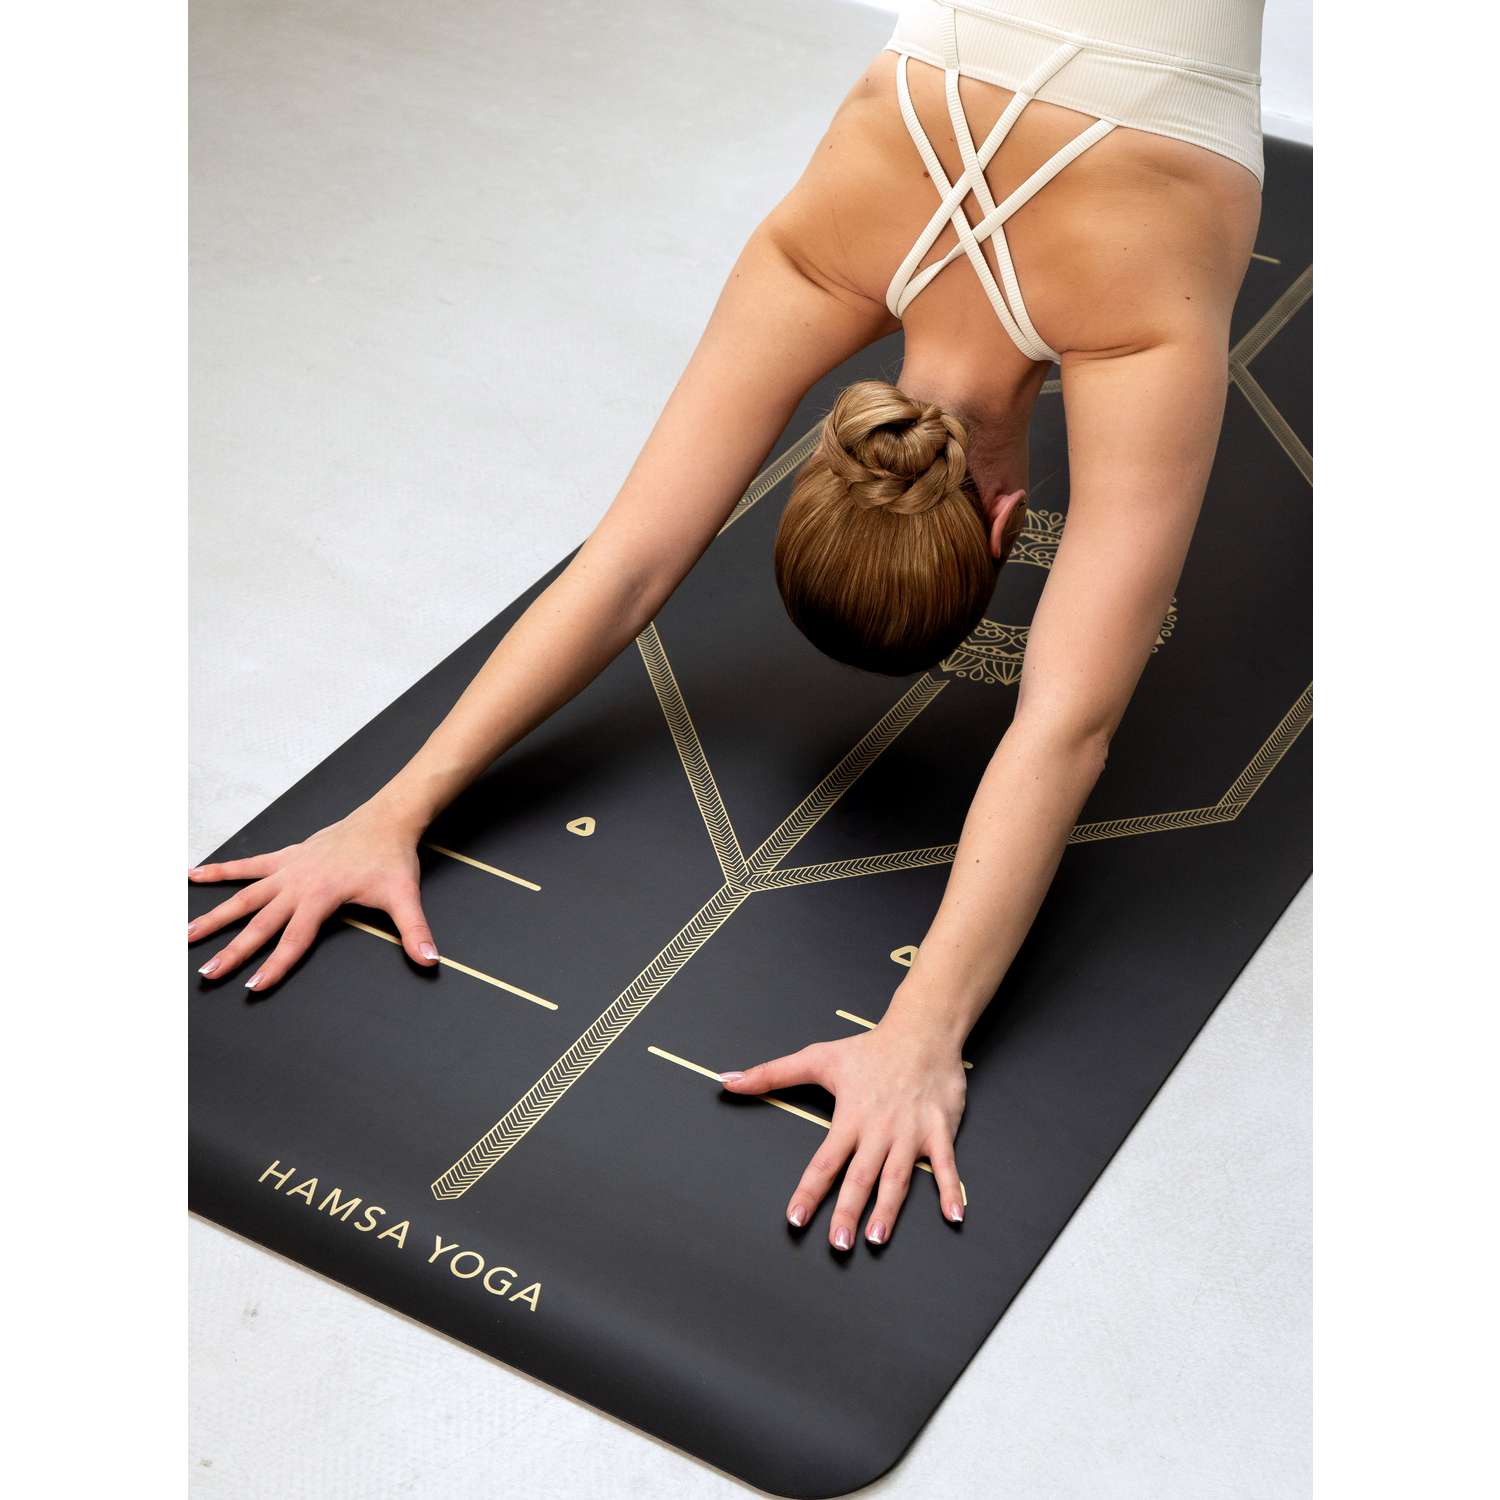 Коврик для йоги и фитнеса Hamsa Yoga 183х68х0.6 см черный - фото 4